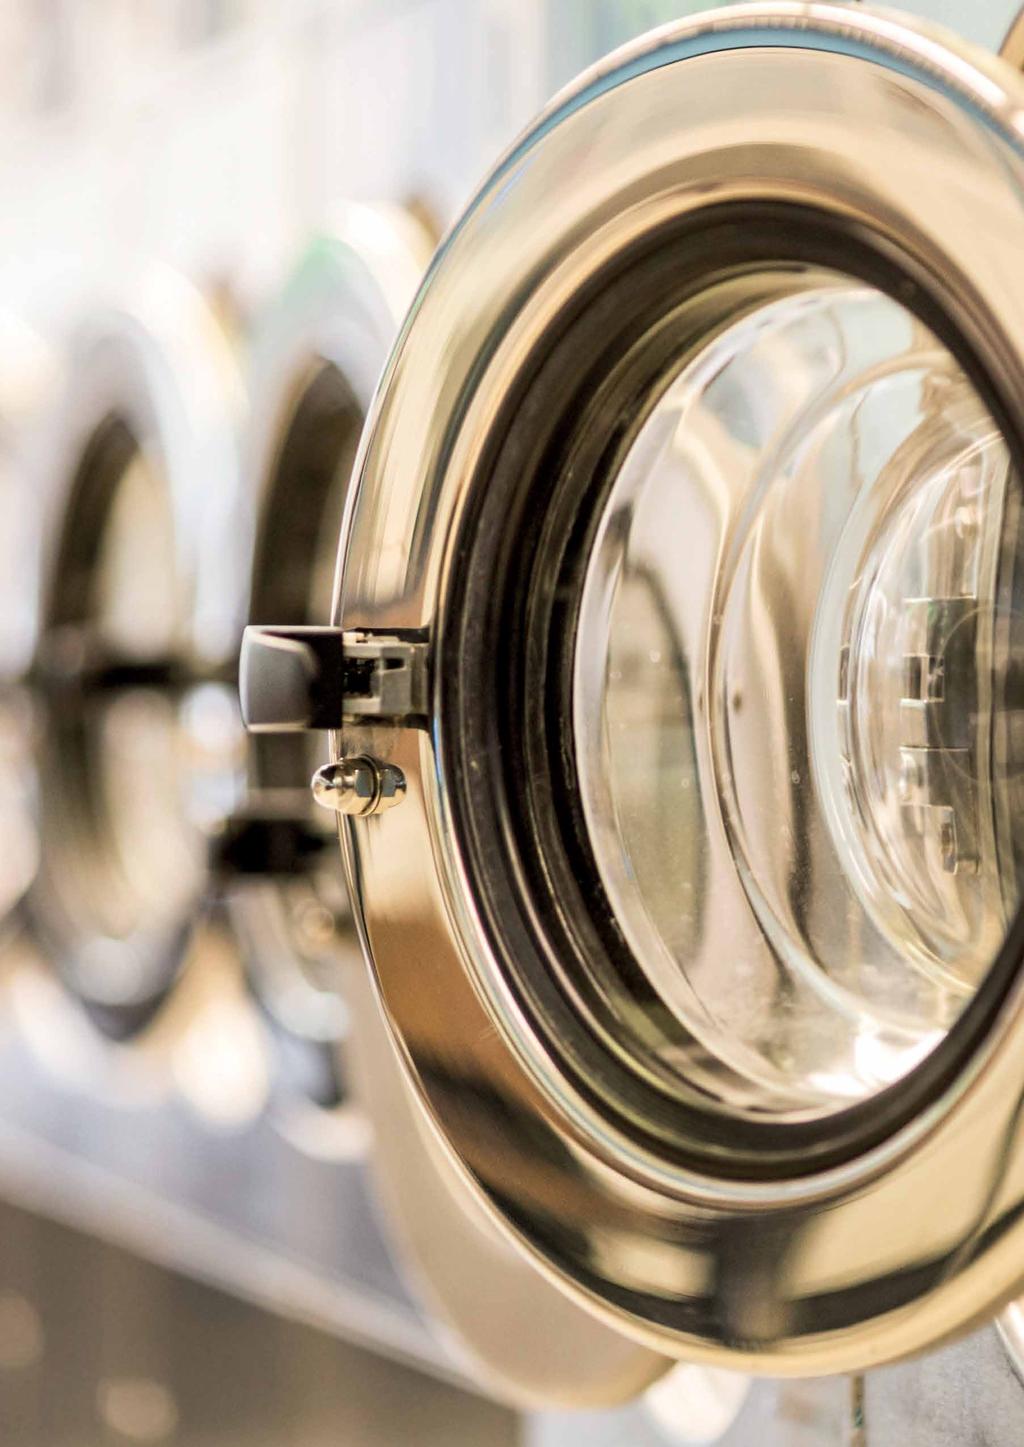 ALLMÄNNA UTRYMMEN TVÄTTSTUGA I tvättstugan vill man ha ett ljus som alltid känns nytt och fräscht, precis som tvätten.